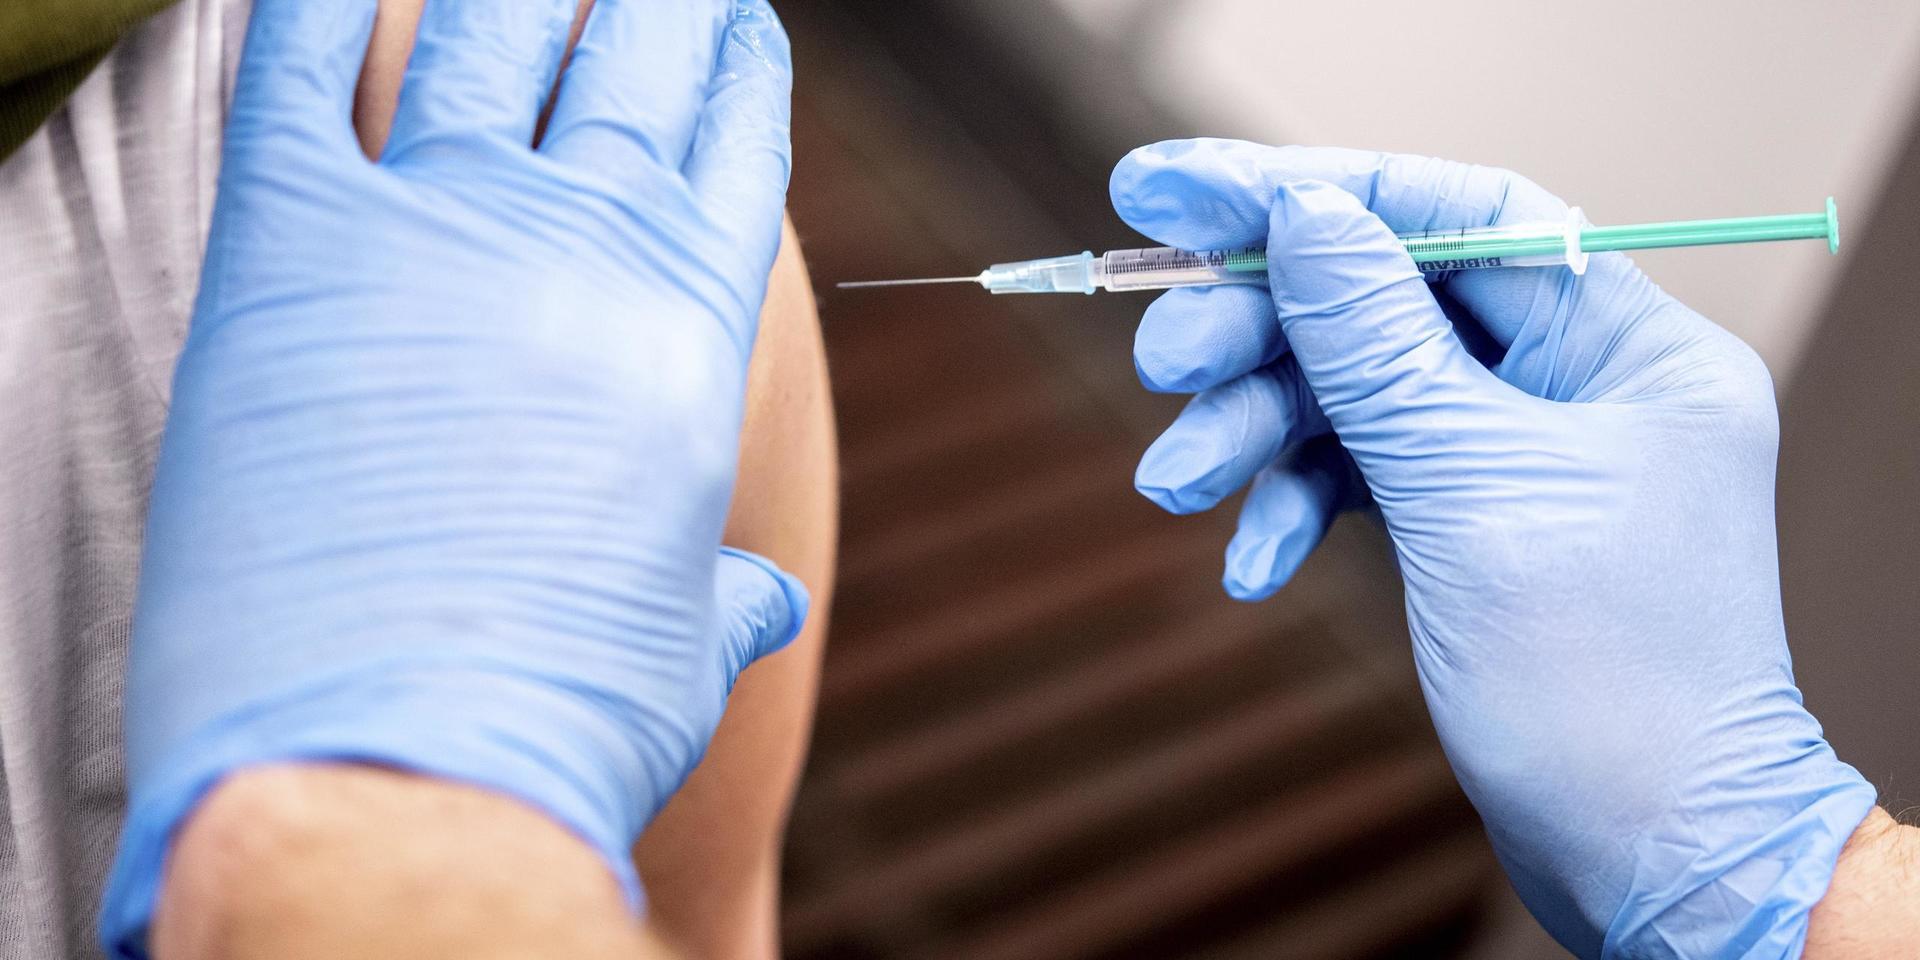 Personer som gått före i vaccinordningen och lyckats få dos ett mot coronavaccinet kommer att få vänta innan de får dos två. Det har Västra Götalandsregionen beslutat. 